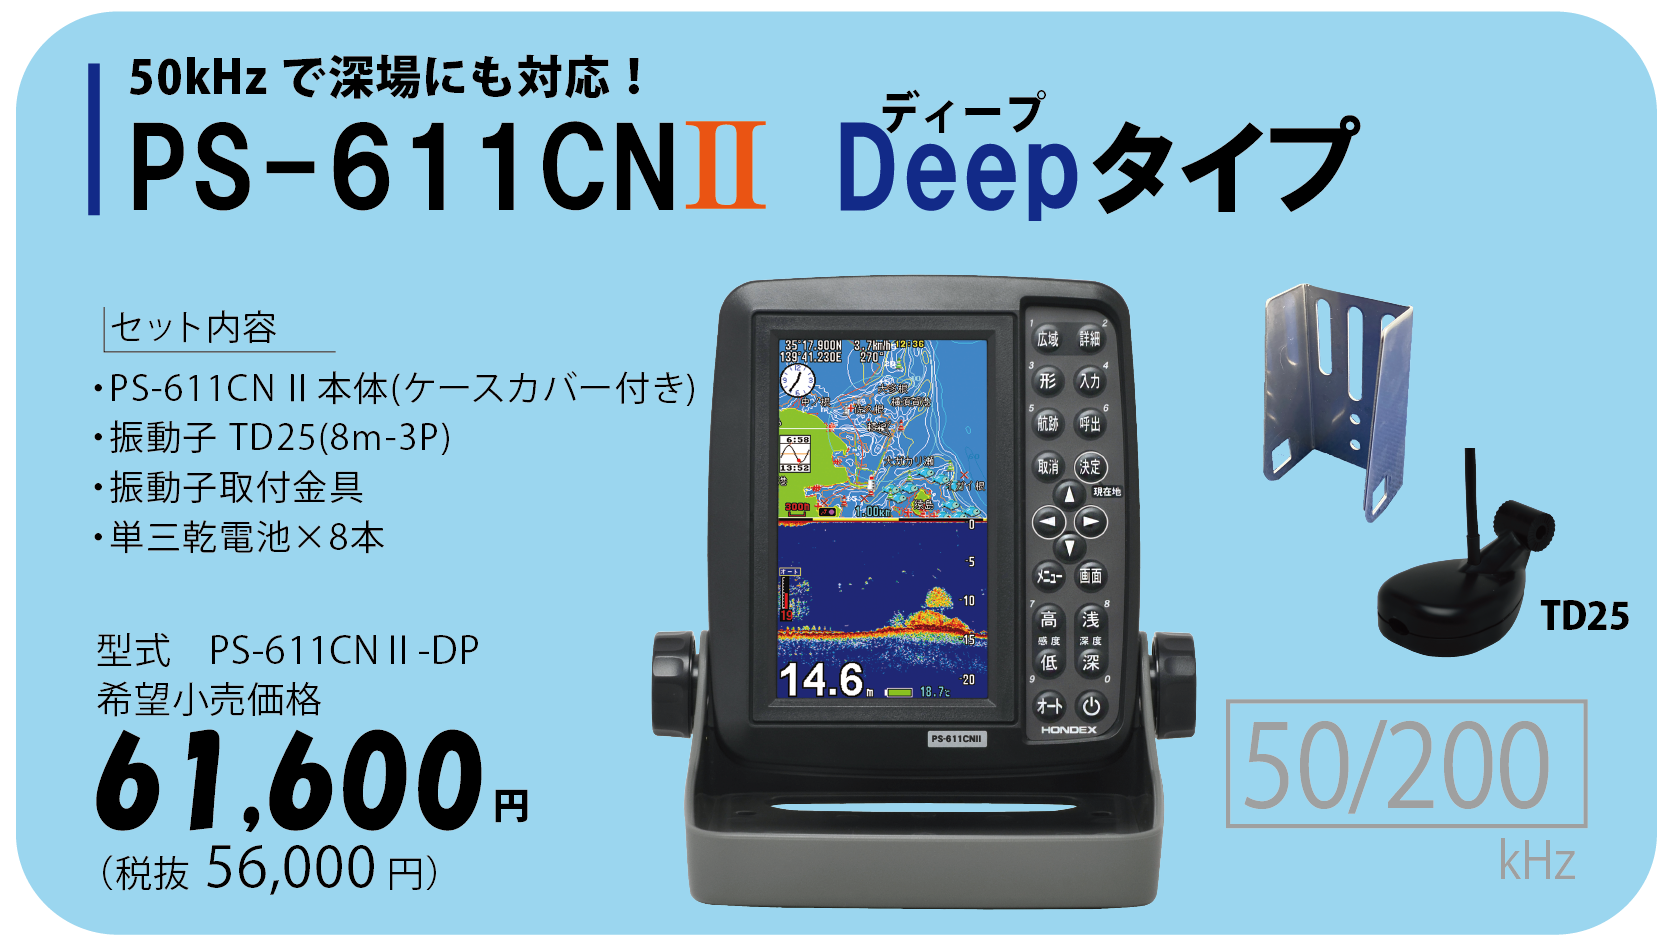 【早い者勝ち】新品 ホンデックス 魚探 ポータブルGPS PS-611CN2